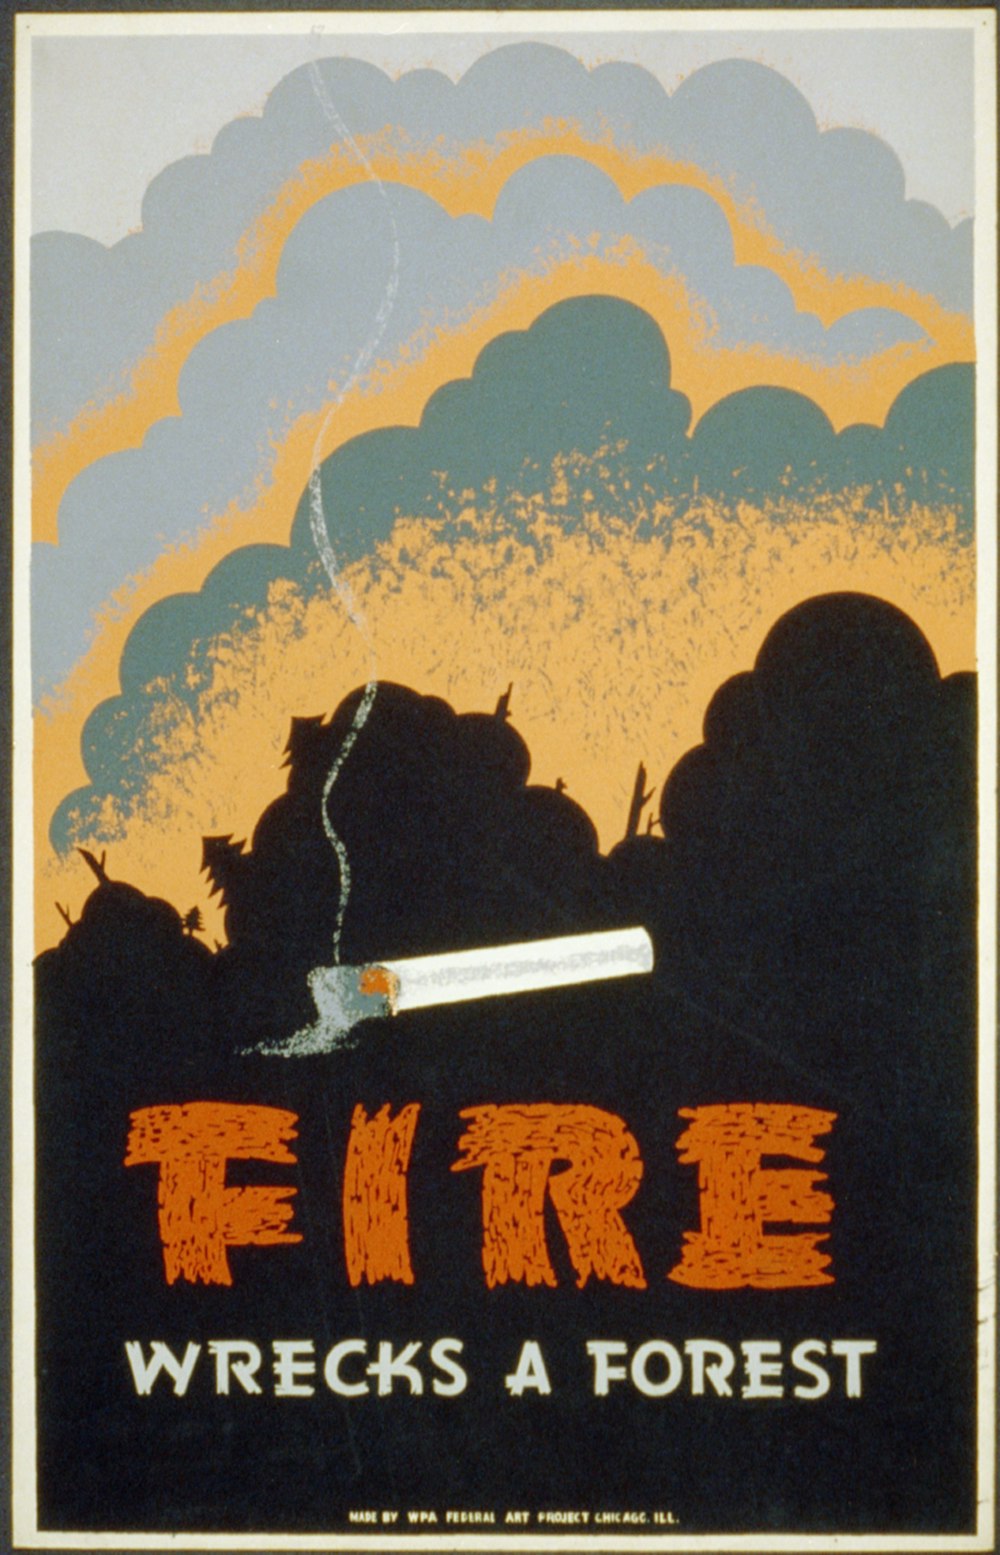 Cartaz de prevenção de incêndios florestais mostrando um cigarro aceso e um incêndio florestal. 